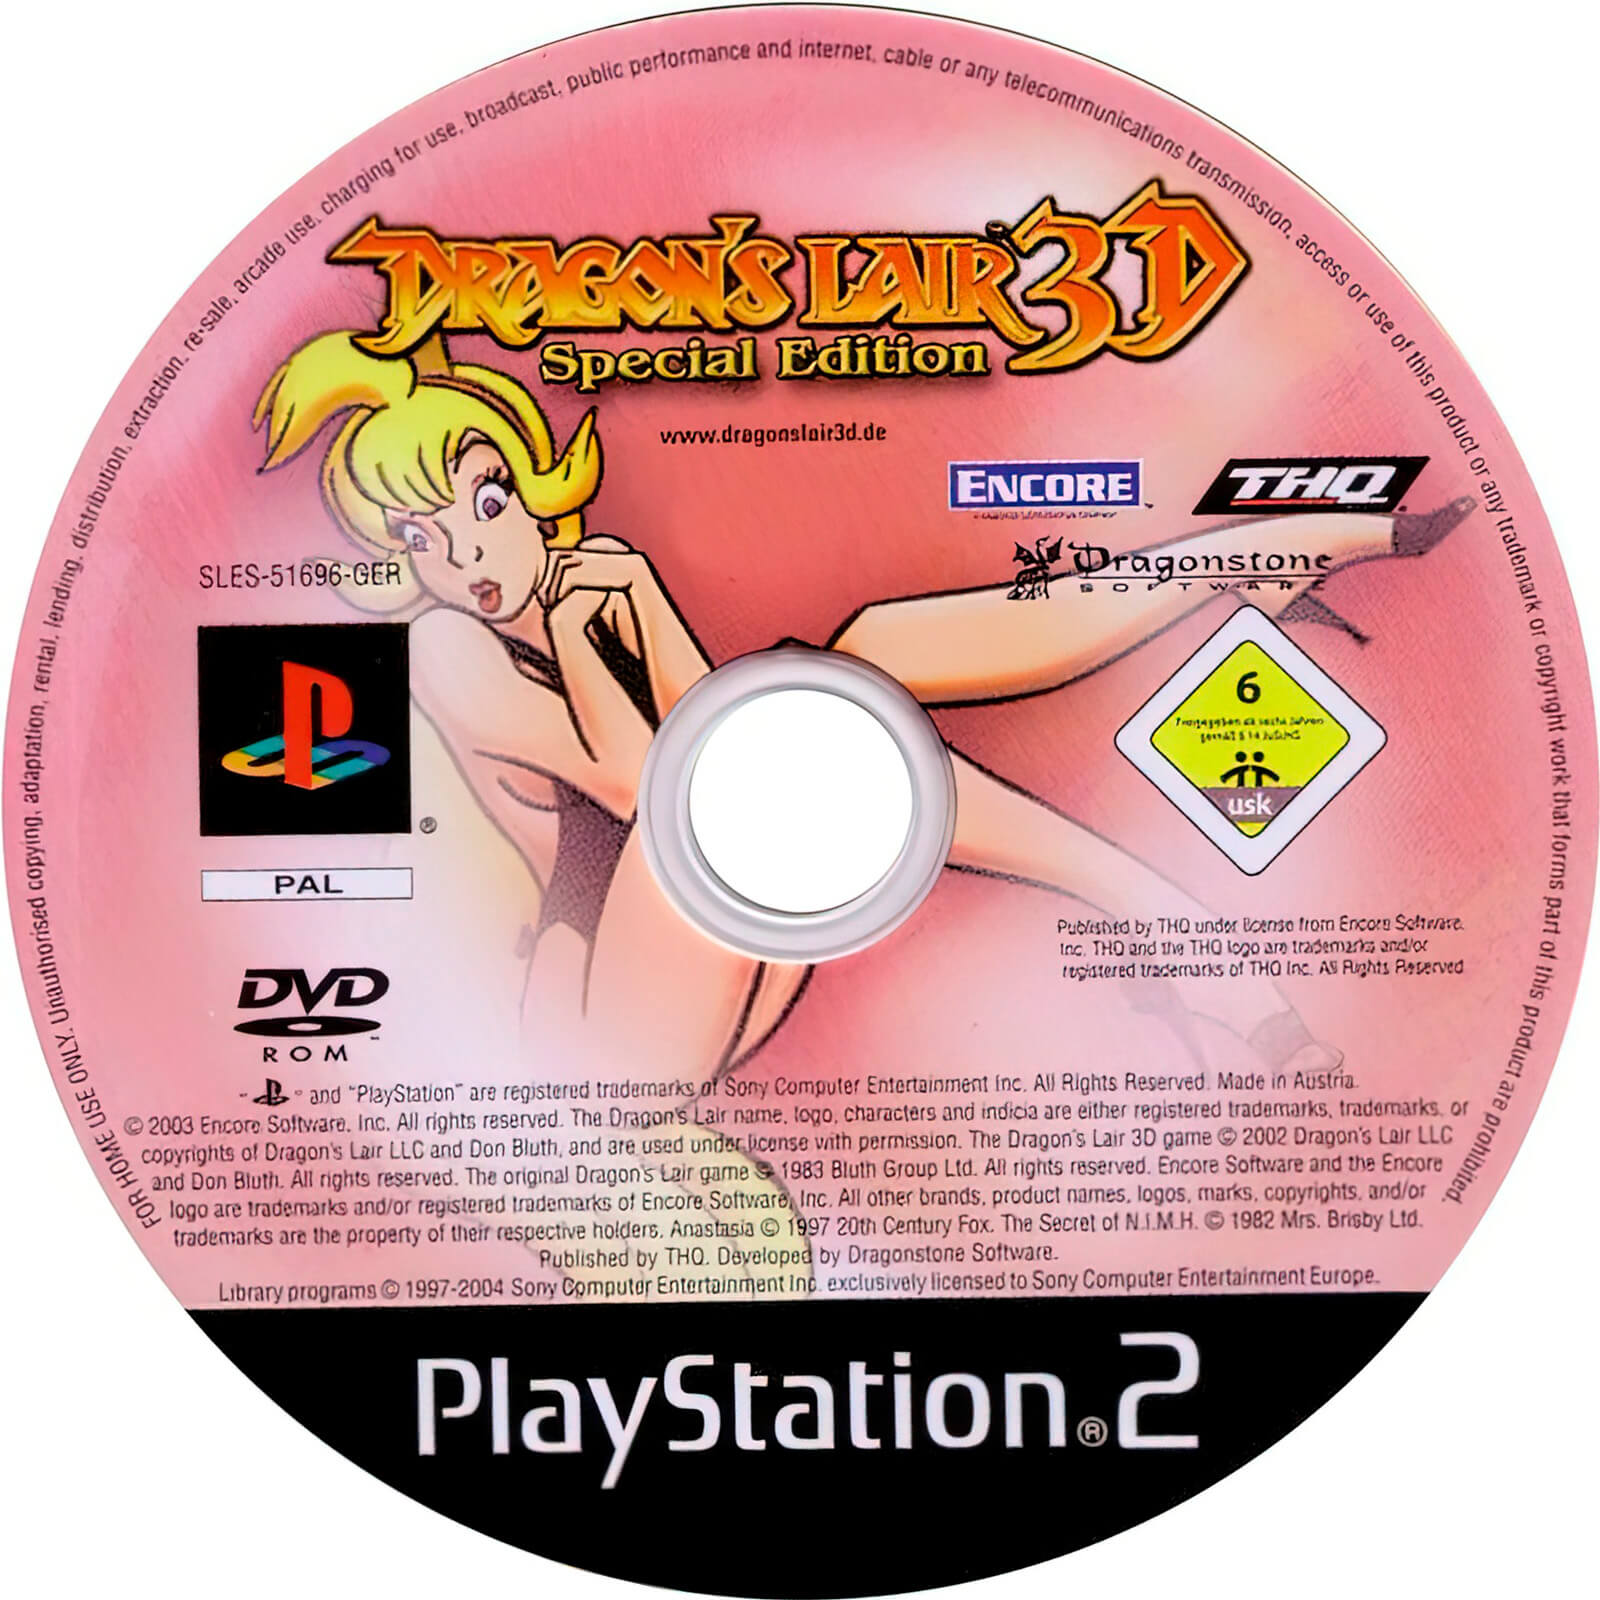 Лицензионный диск Dragon's Lair 3D - Special Edition для PlayStation 2